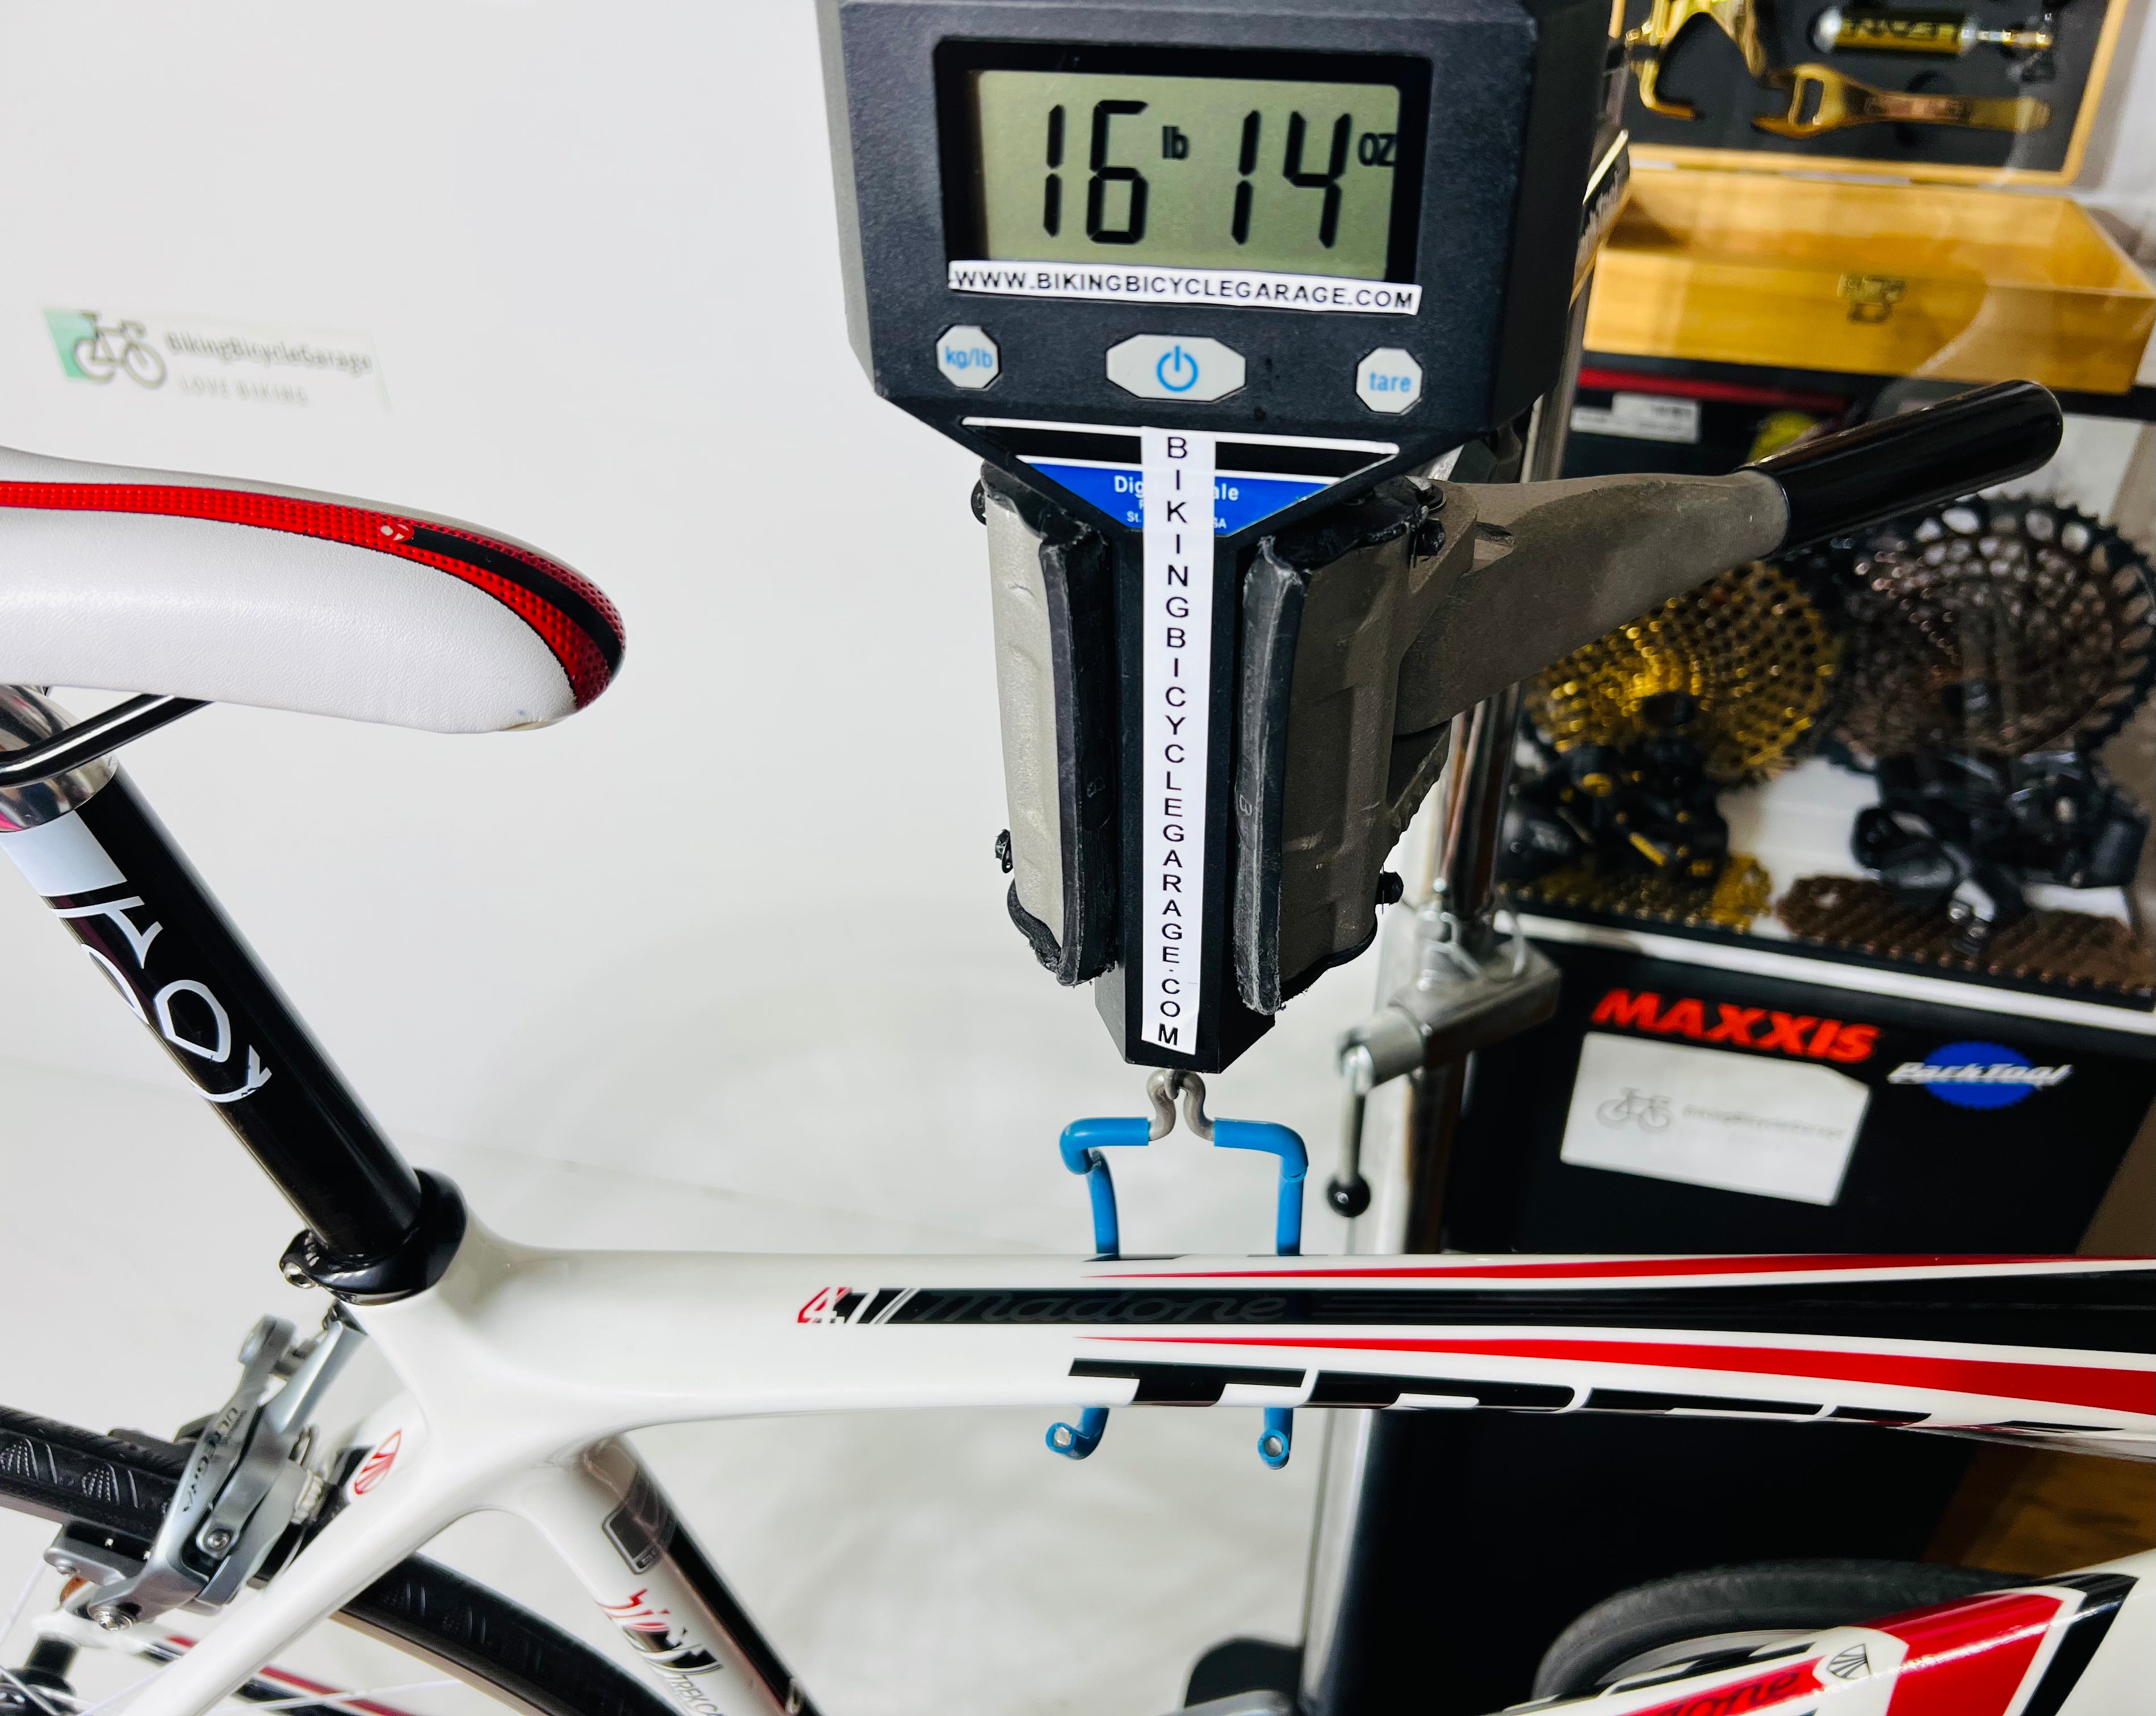 Trek Madone 4.7, Shimano Ultegra, Carbon Fiber Road Bike, 56cm